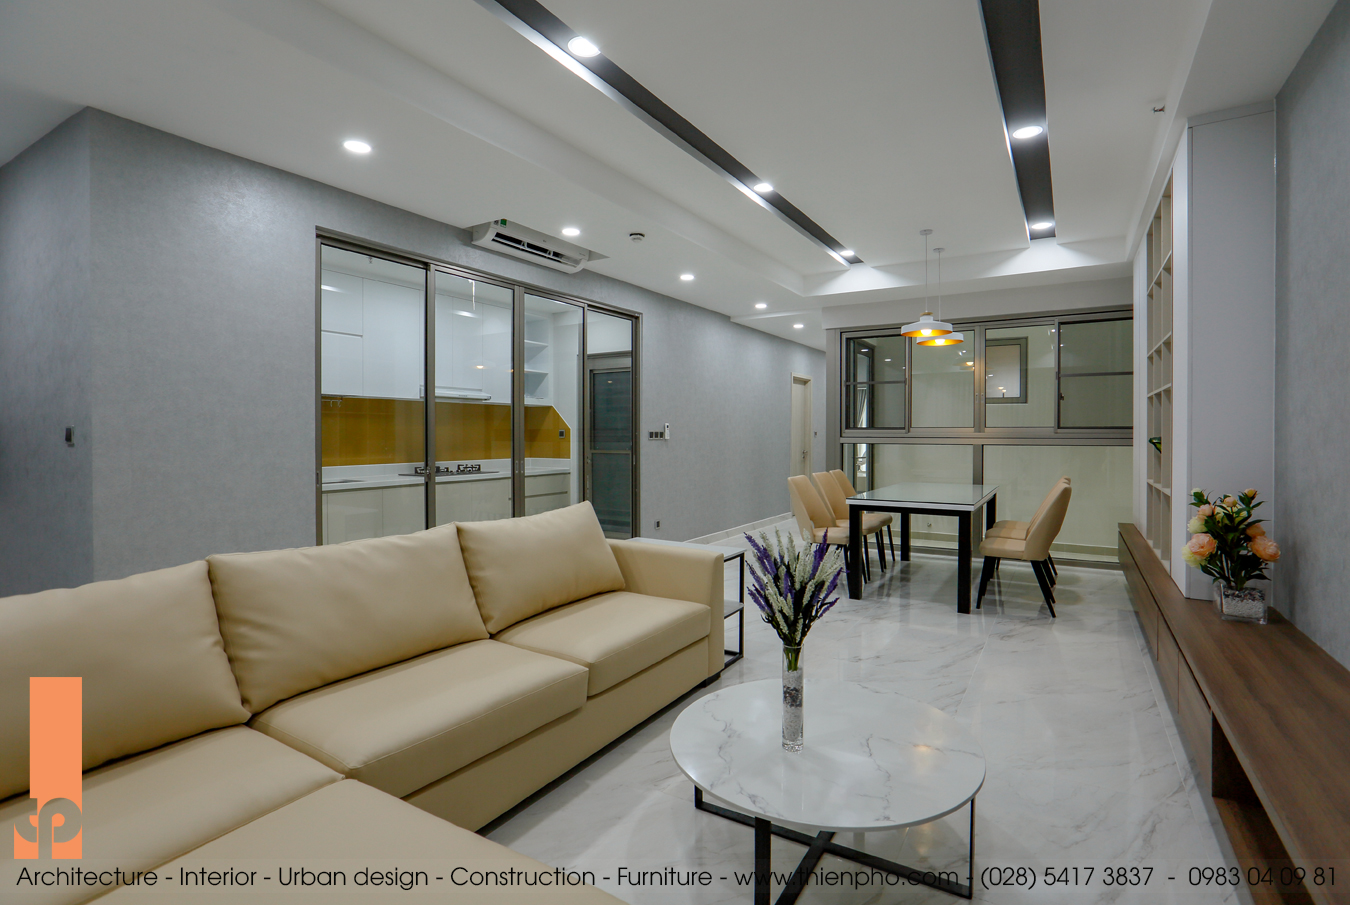 Hình ảnh thi công hoàn thiện nội thất căn hộ A2-17 Midtown, Phú Mỹ Hưng